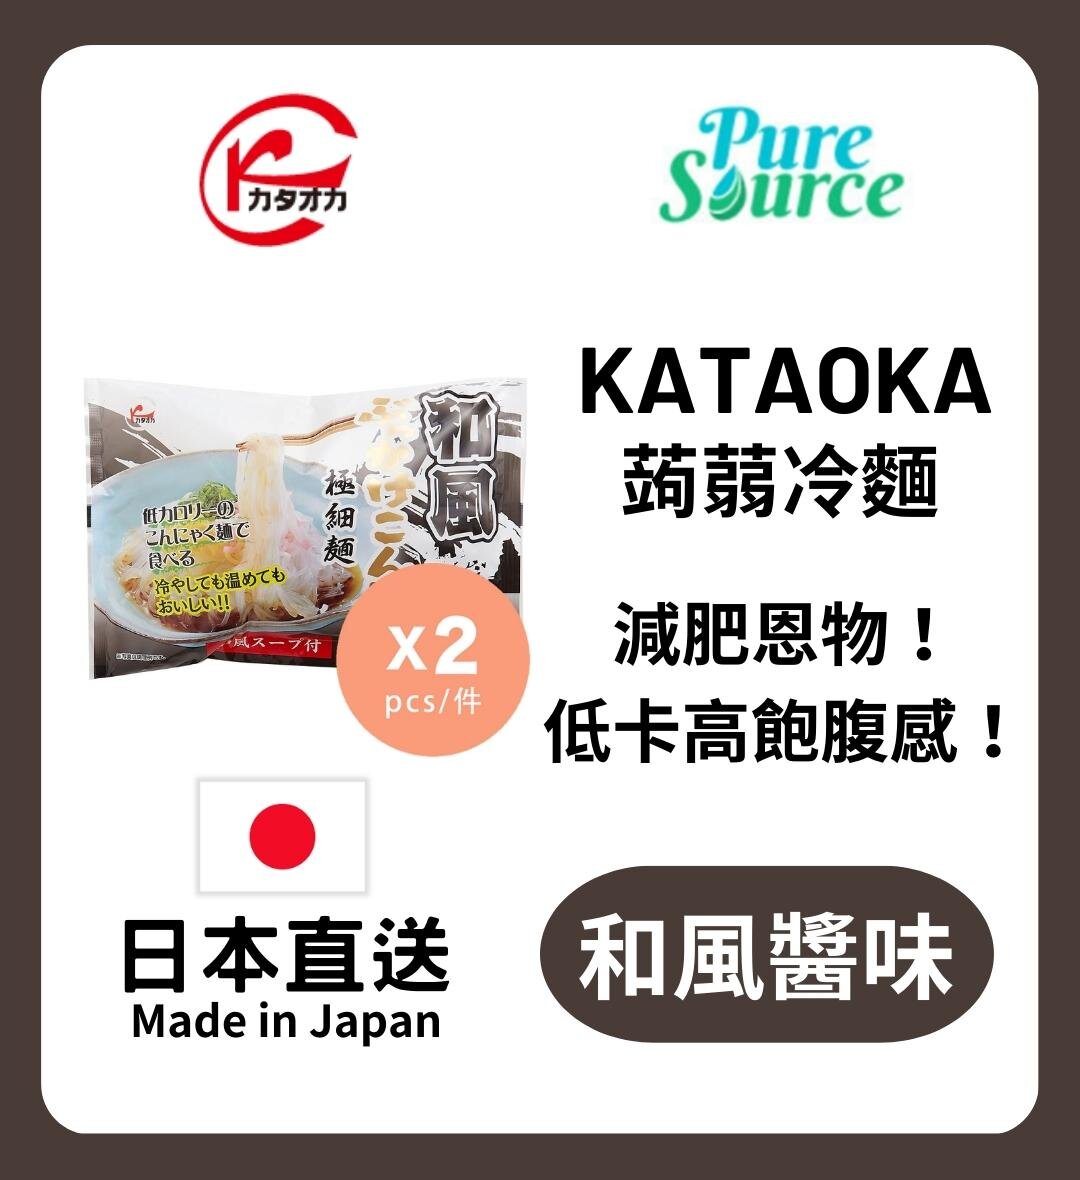 kataoka | [日本直送] 蒟蒻冷麵-和風醬汁x 2 #低卡路里| HKTVmall 香港